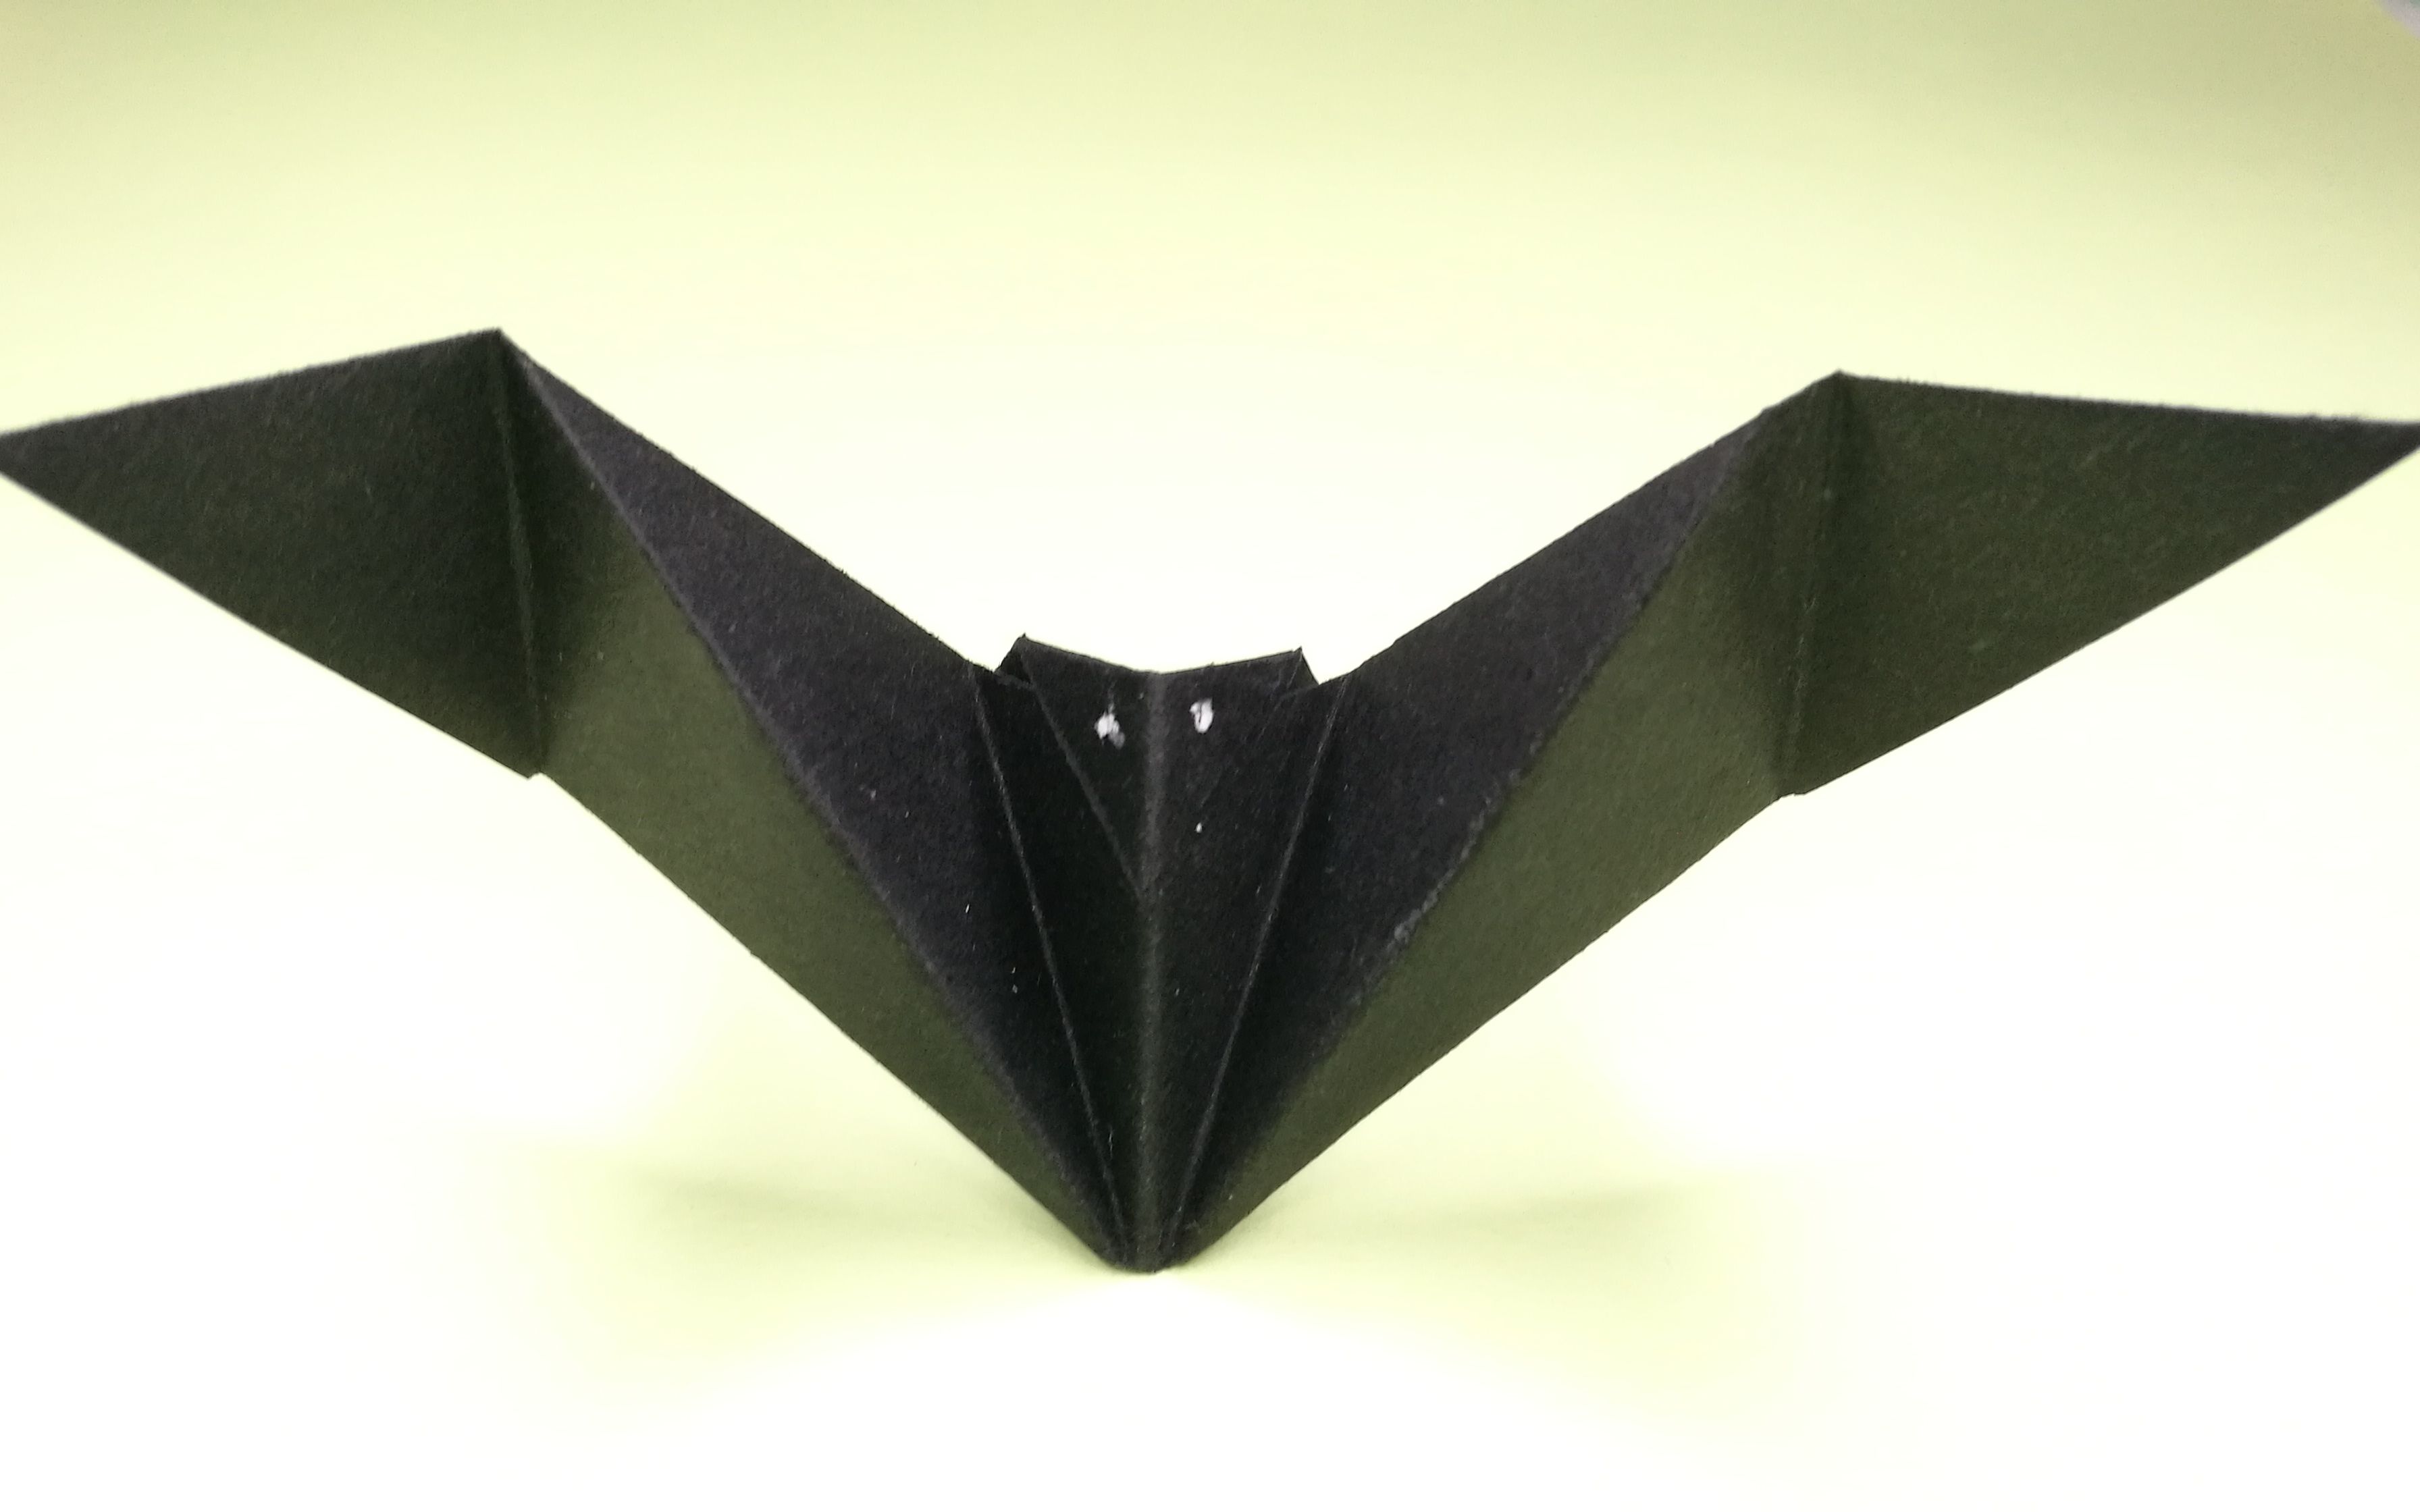 简单的手工折纸蝙蝠图片